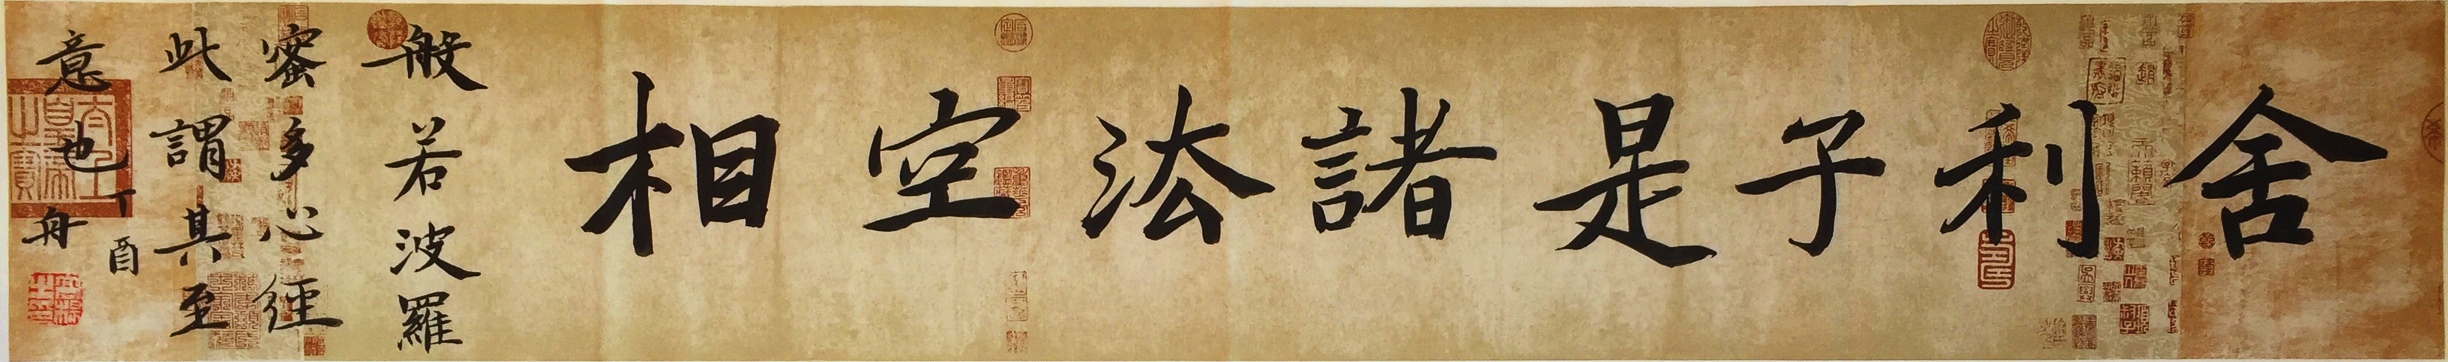 中国书法家协会高杨作品 佛教经典语句